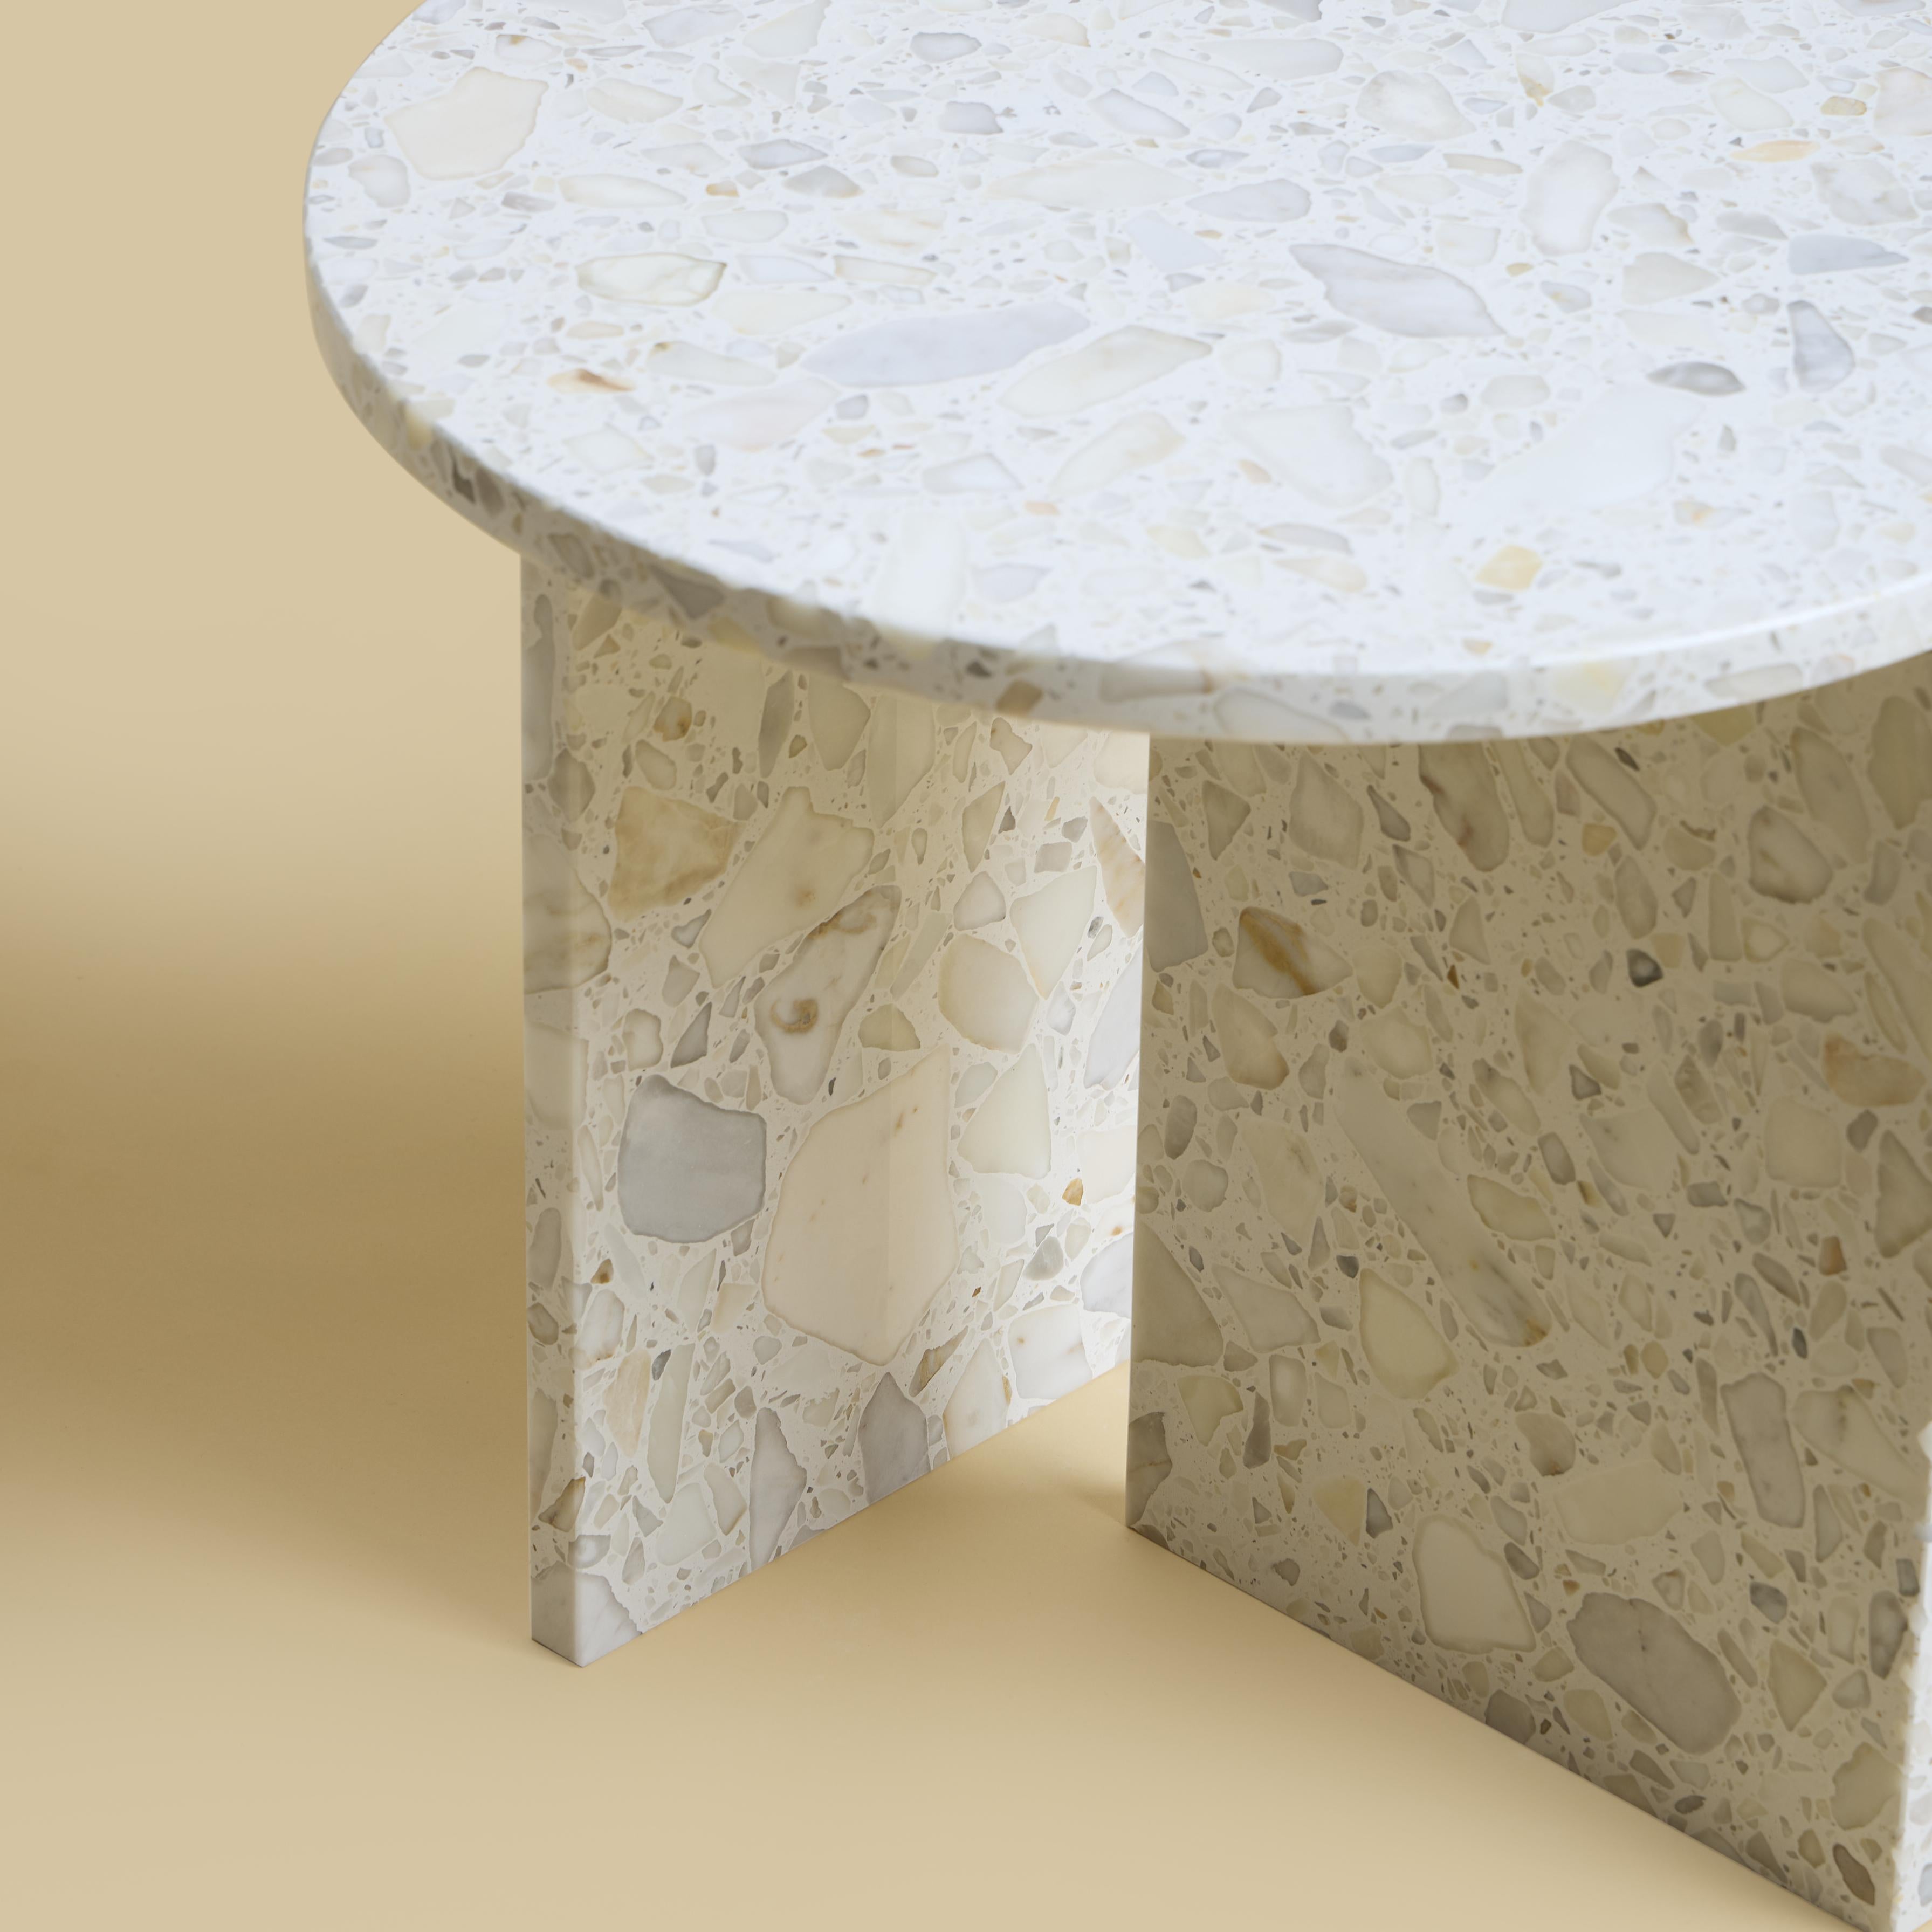 La table basse Kyushu est entièrement réalisée en Carrara Terrazzo. Le plateau est circulaire et mesure 45 cm de diamètre. Les pieds sont constitués de deux plaques de marbre dont une partie est incrustée sur le plateau, ce qui constitue un détail